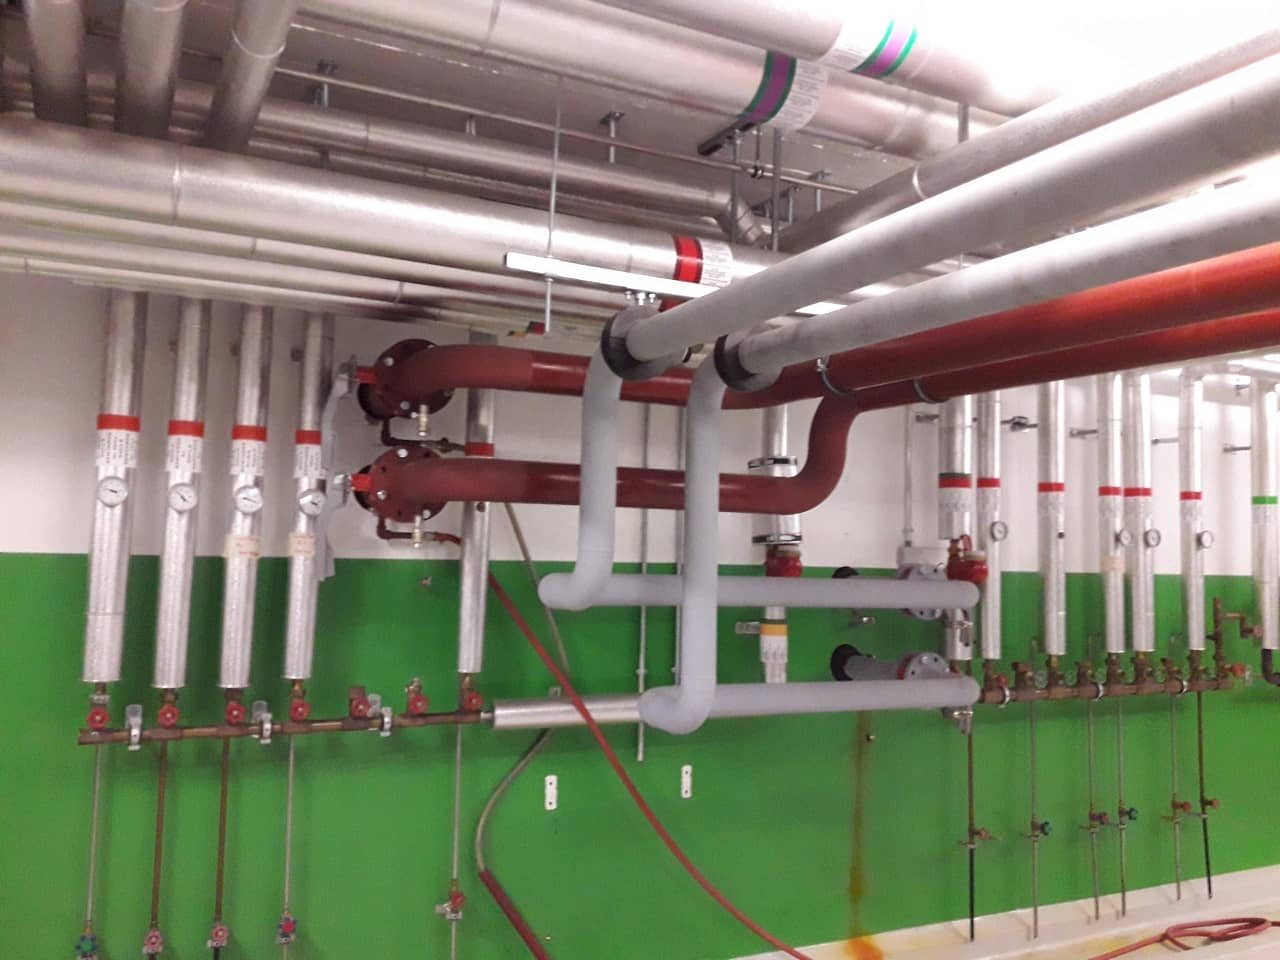 Installation tuyauterie colonnes chaud et froid dans un bâtiment international, Neotech Energies, expert chauffagiste Genève